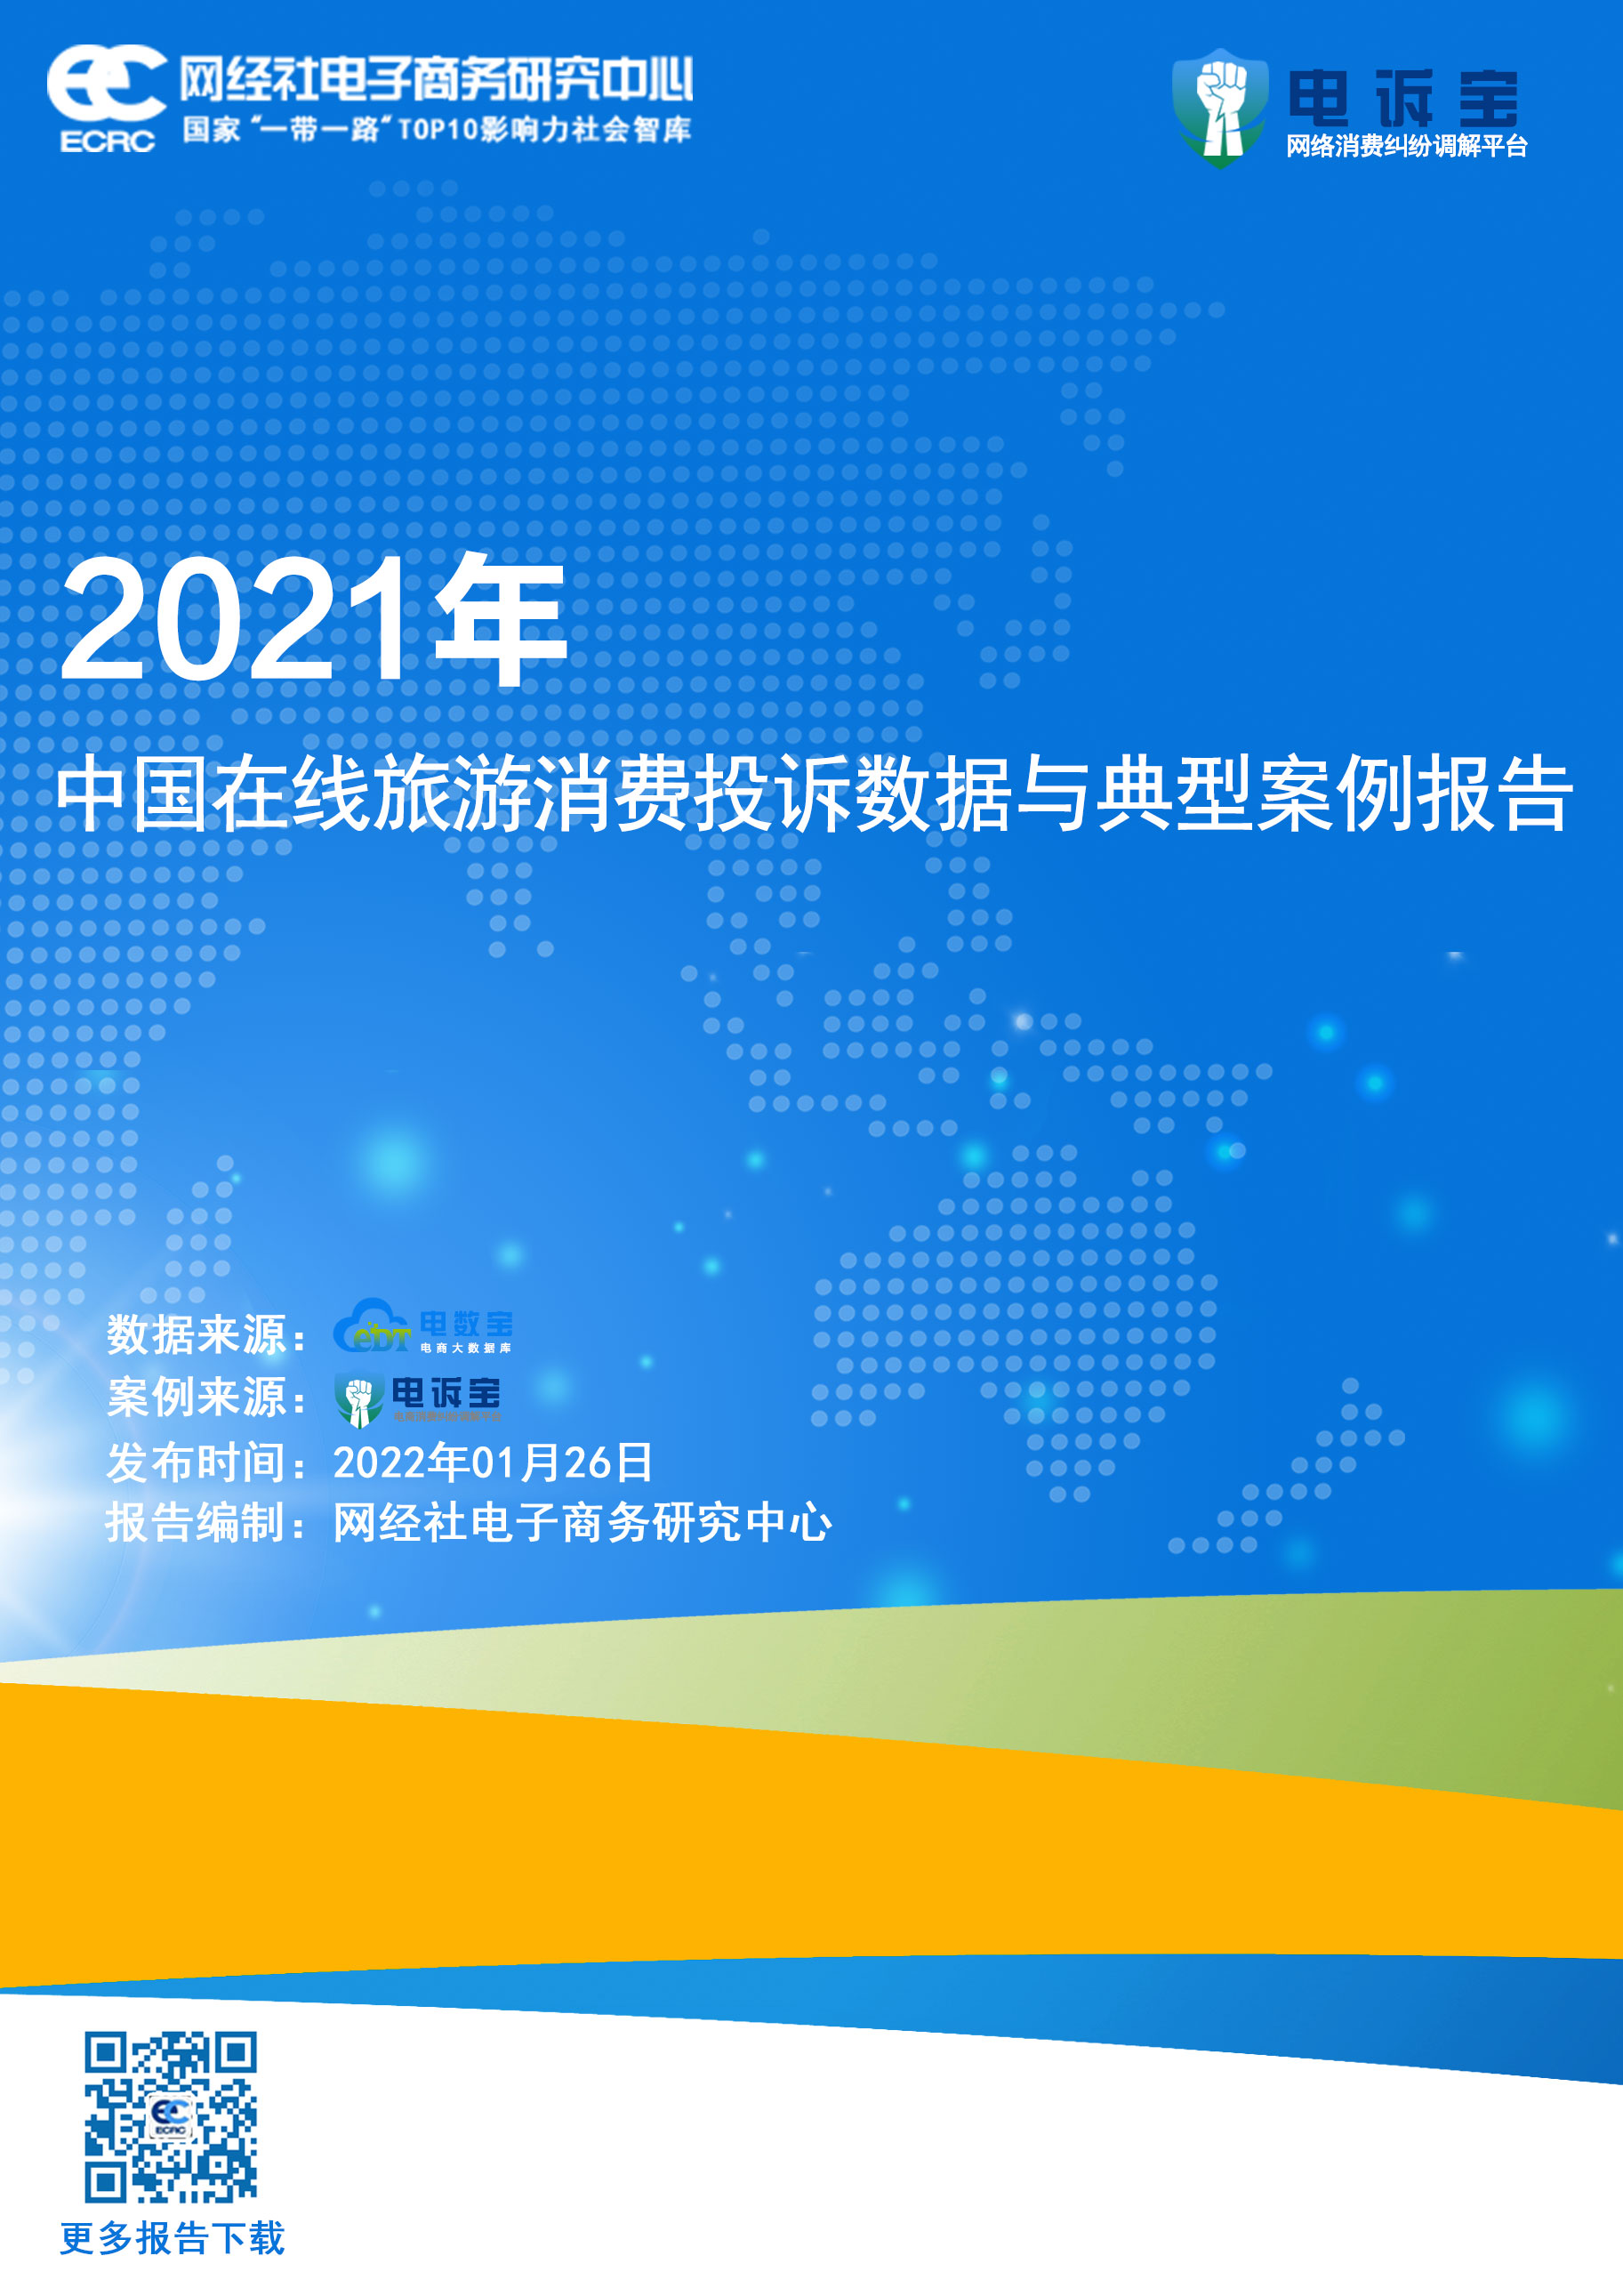 2021年度中国在线旅游消费投诉数据与典型案例报告(1).jpg